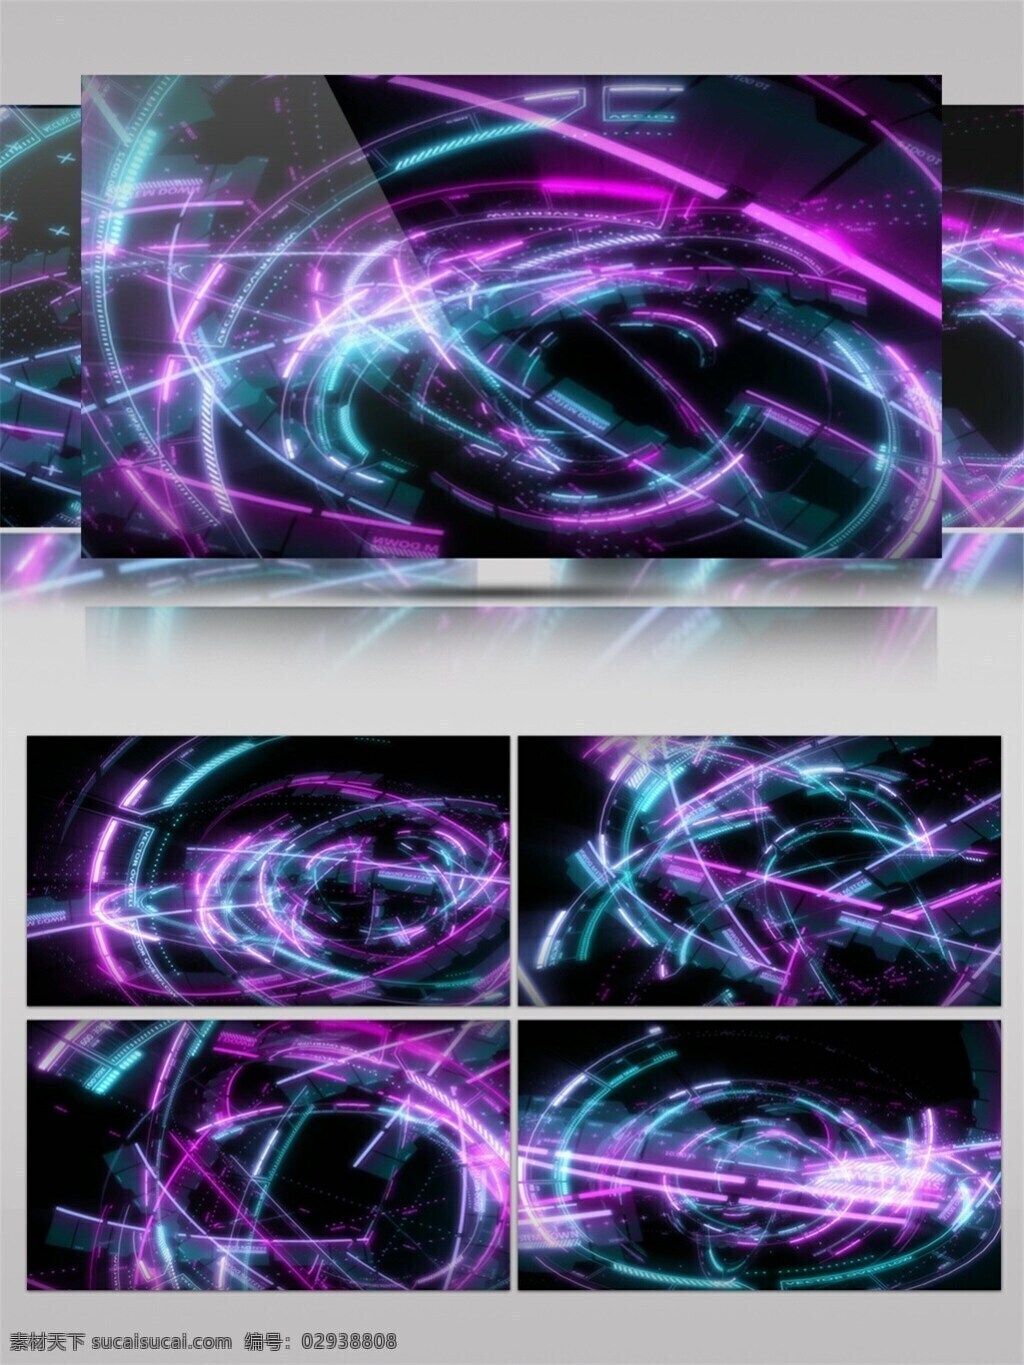 紫光 螺旋 高清 视频 vj灯光 华丽紫光 立体几何 特效视频素材 炫酷光环 渲染灯光